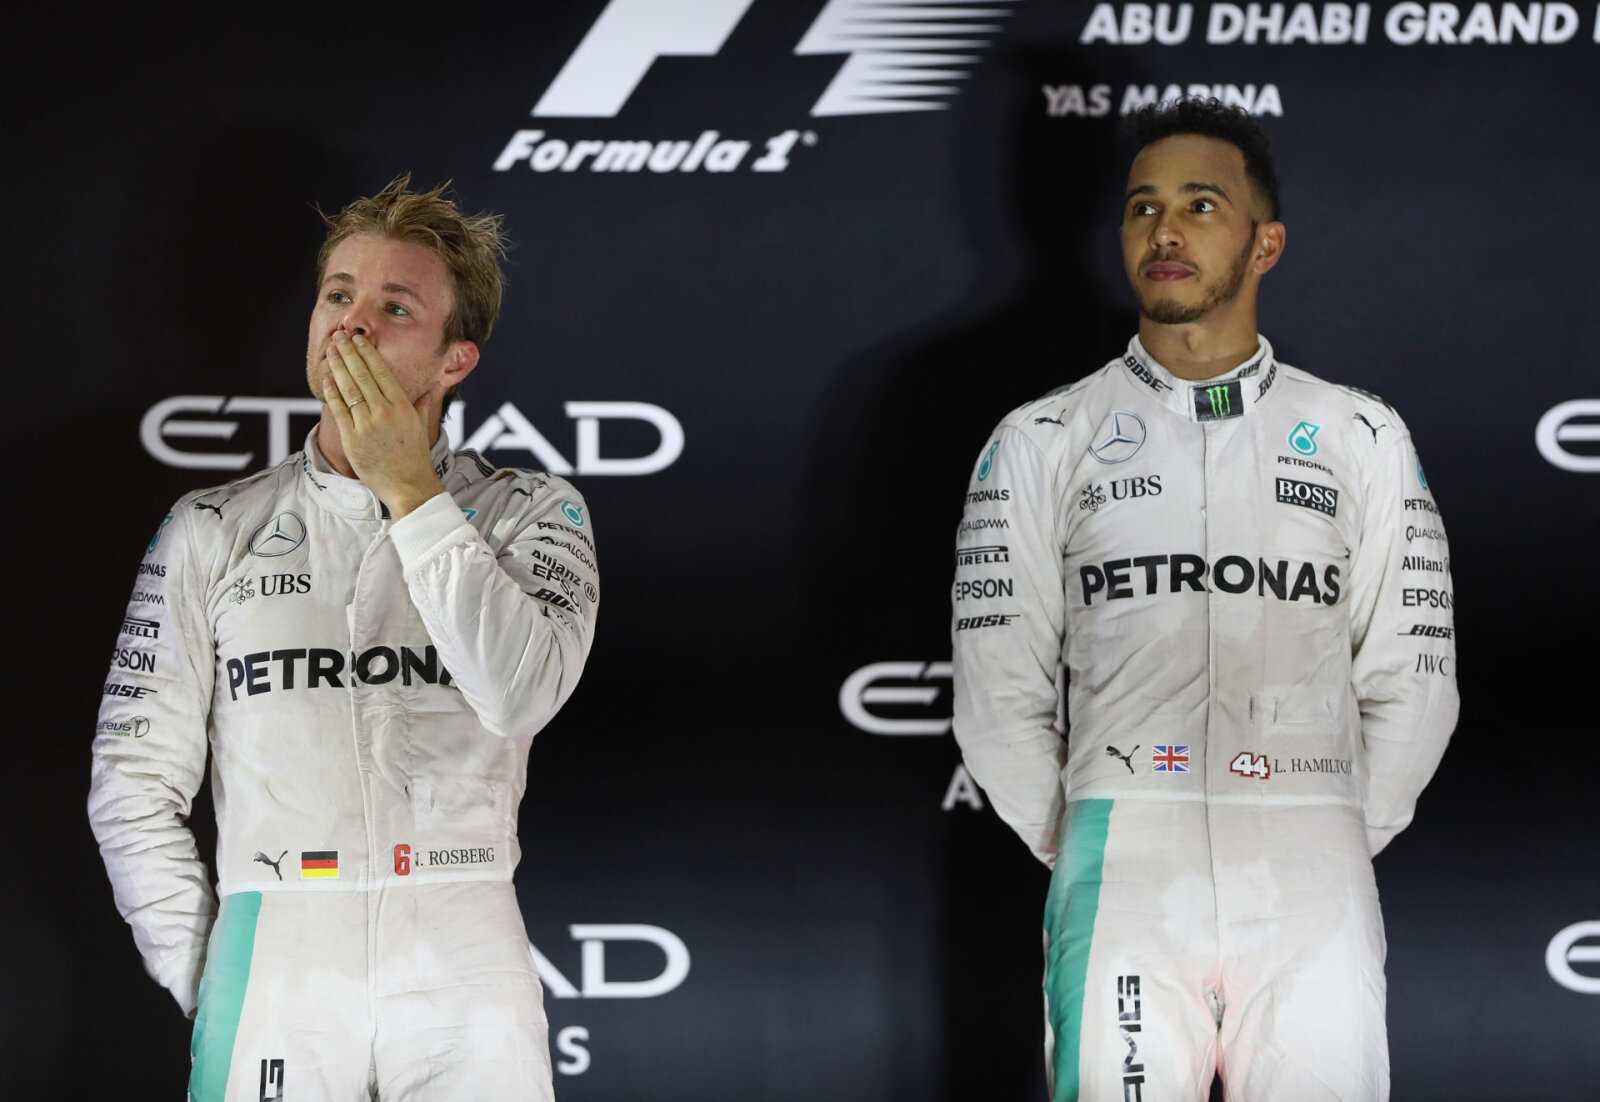 Lewis Hamilton répond au "Soft" Jibe de Nico Rosberg - "C'était inutile"